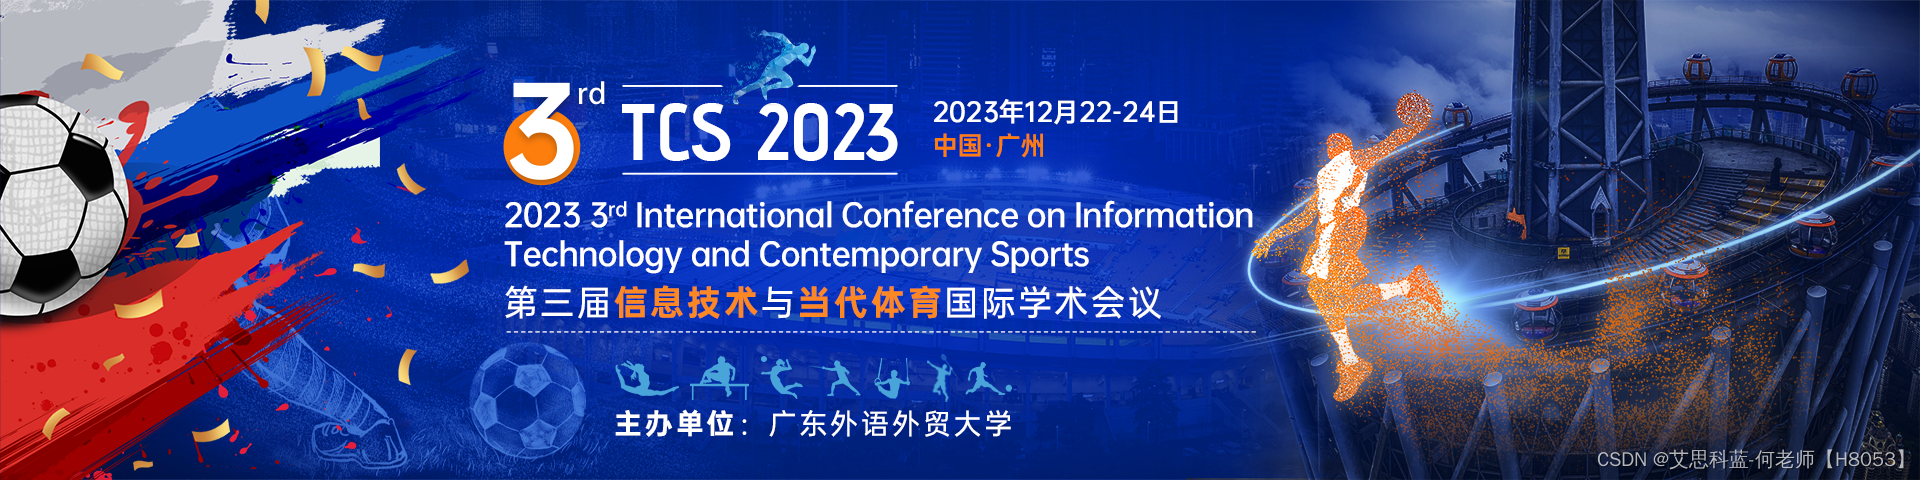 【EI会议征稿中|IEEE出版】第三届信息技术与当代体育国际学术会议（TCS 2023）